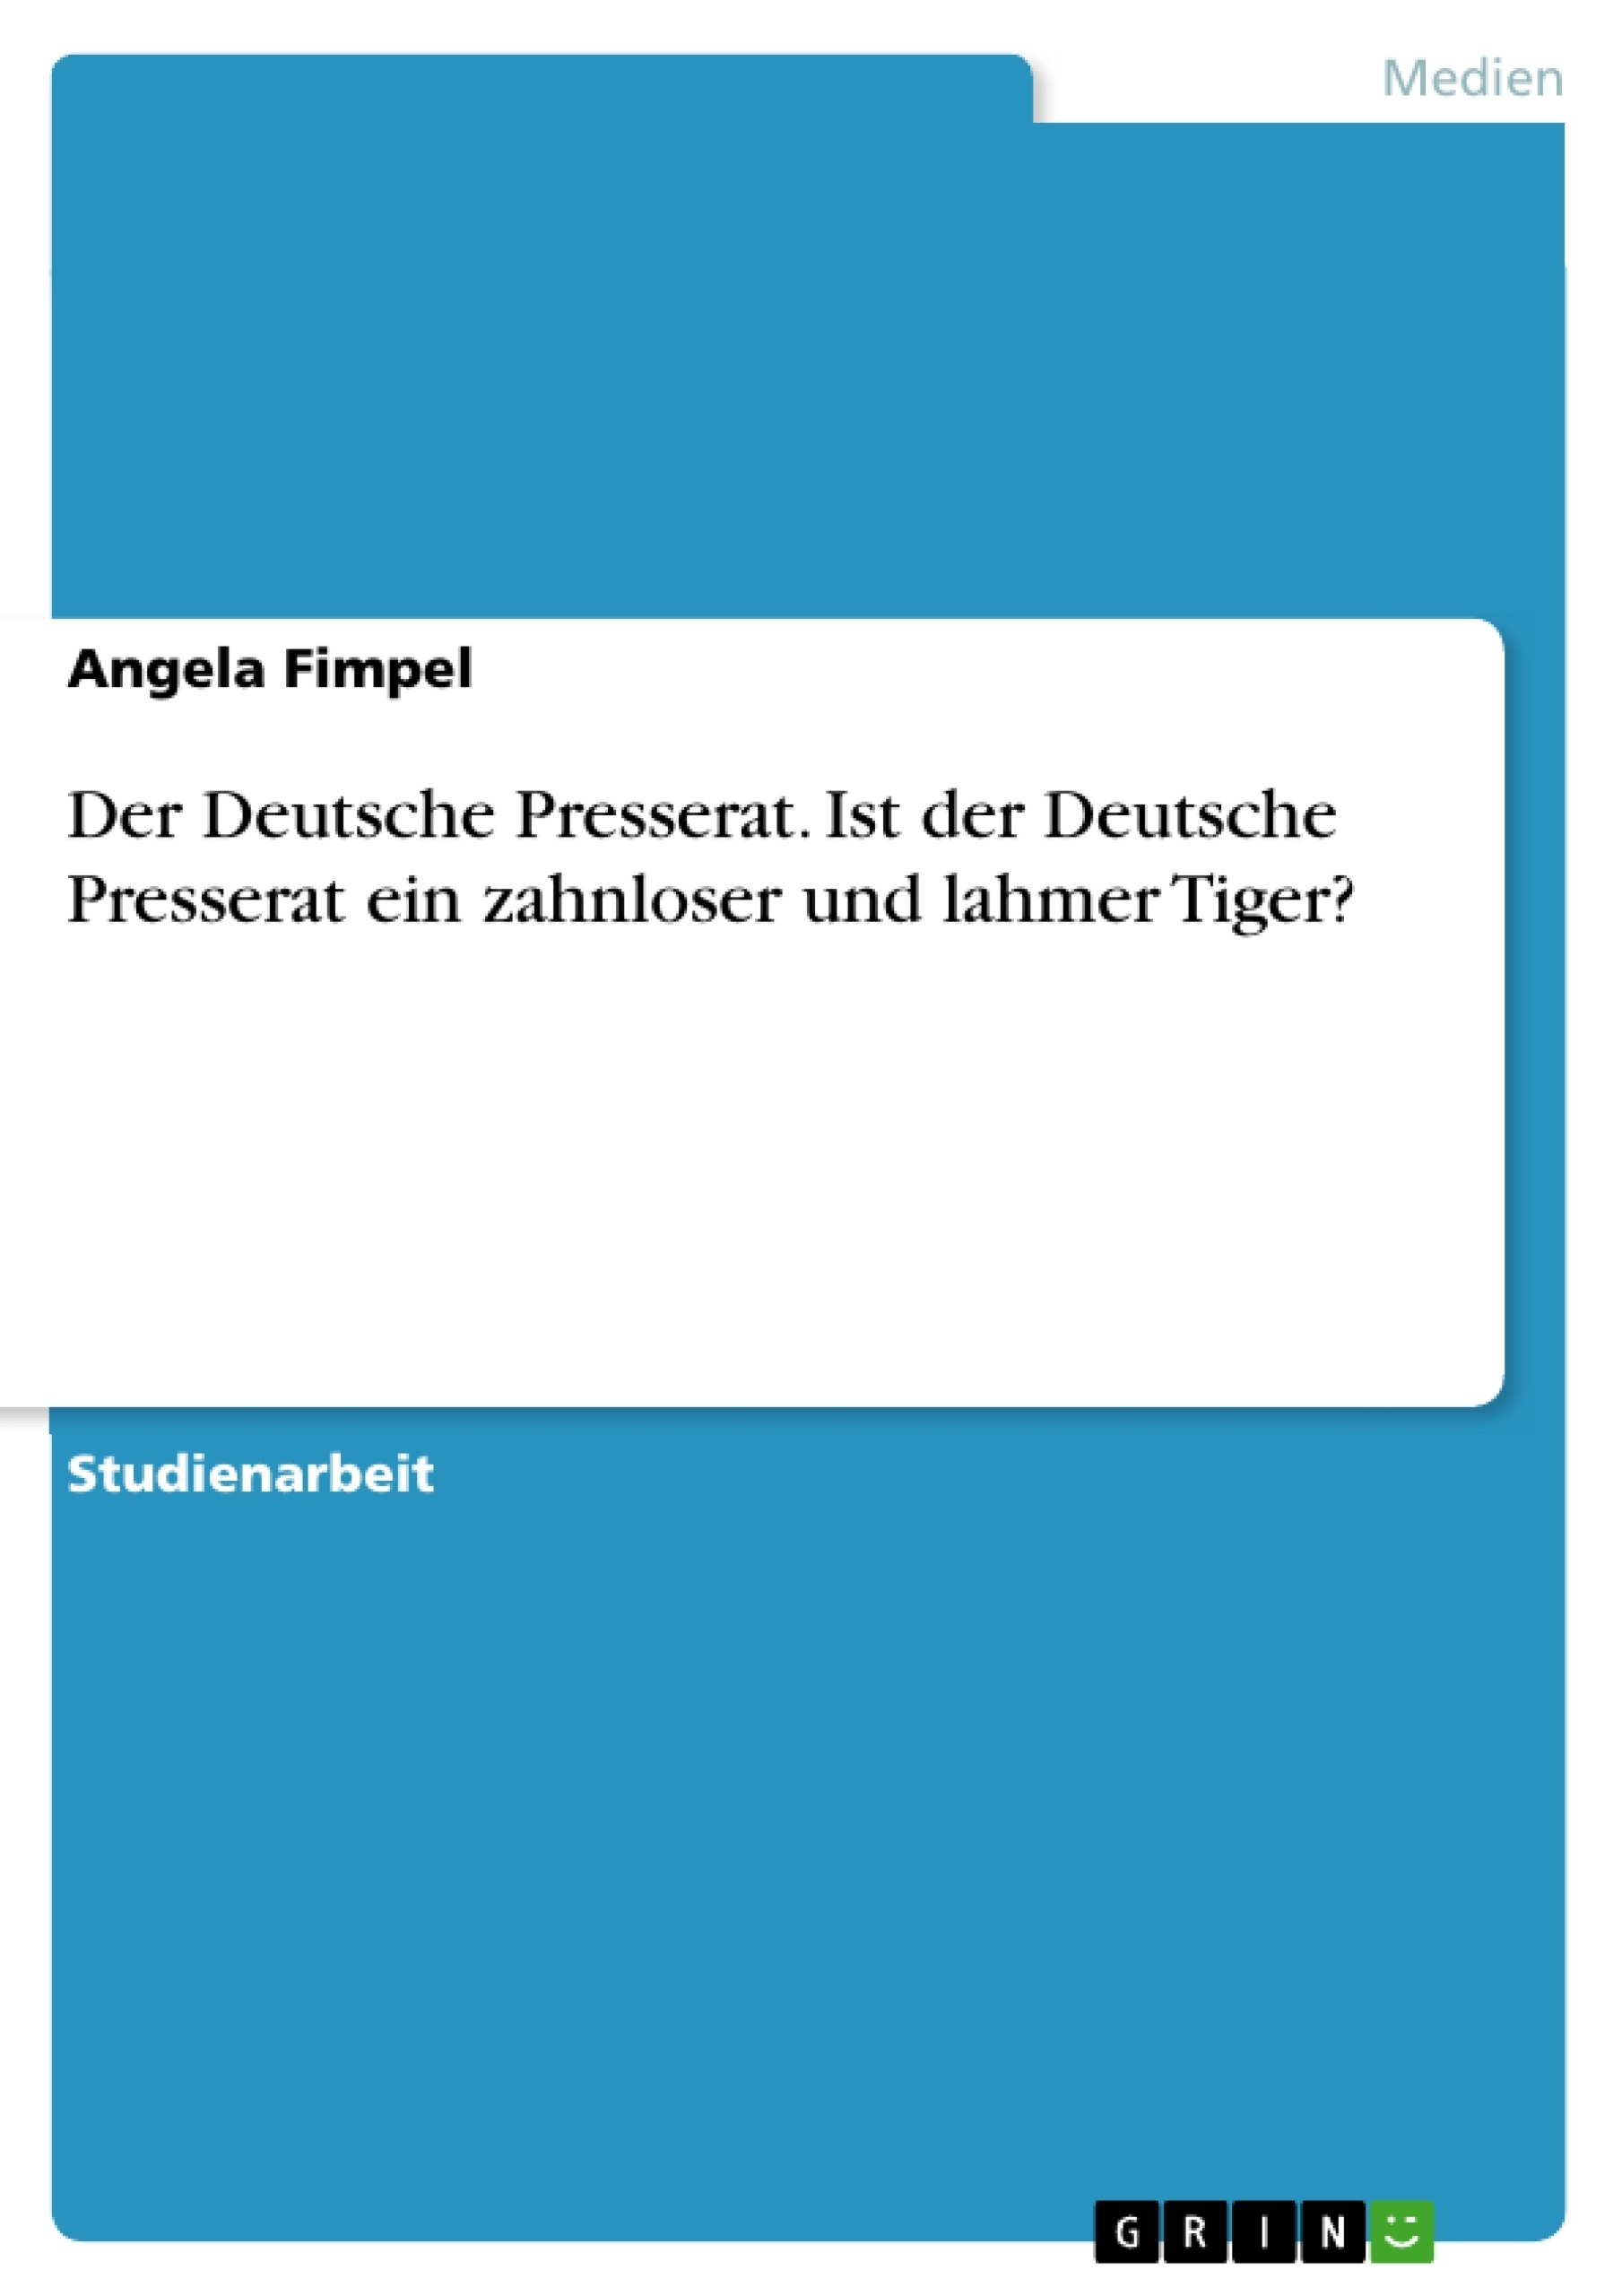 Titre: Der Deutsche Presserat. Ist der Deutsche Presserat ein zahnloser und lahmer Tiger?